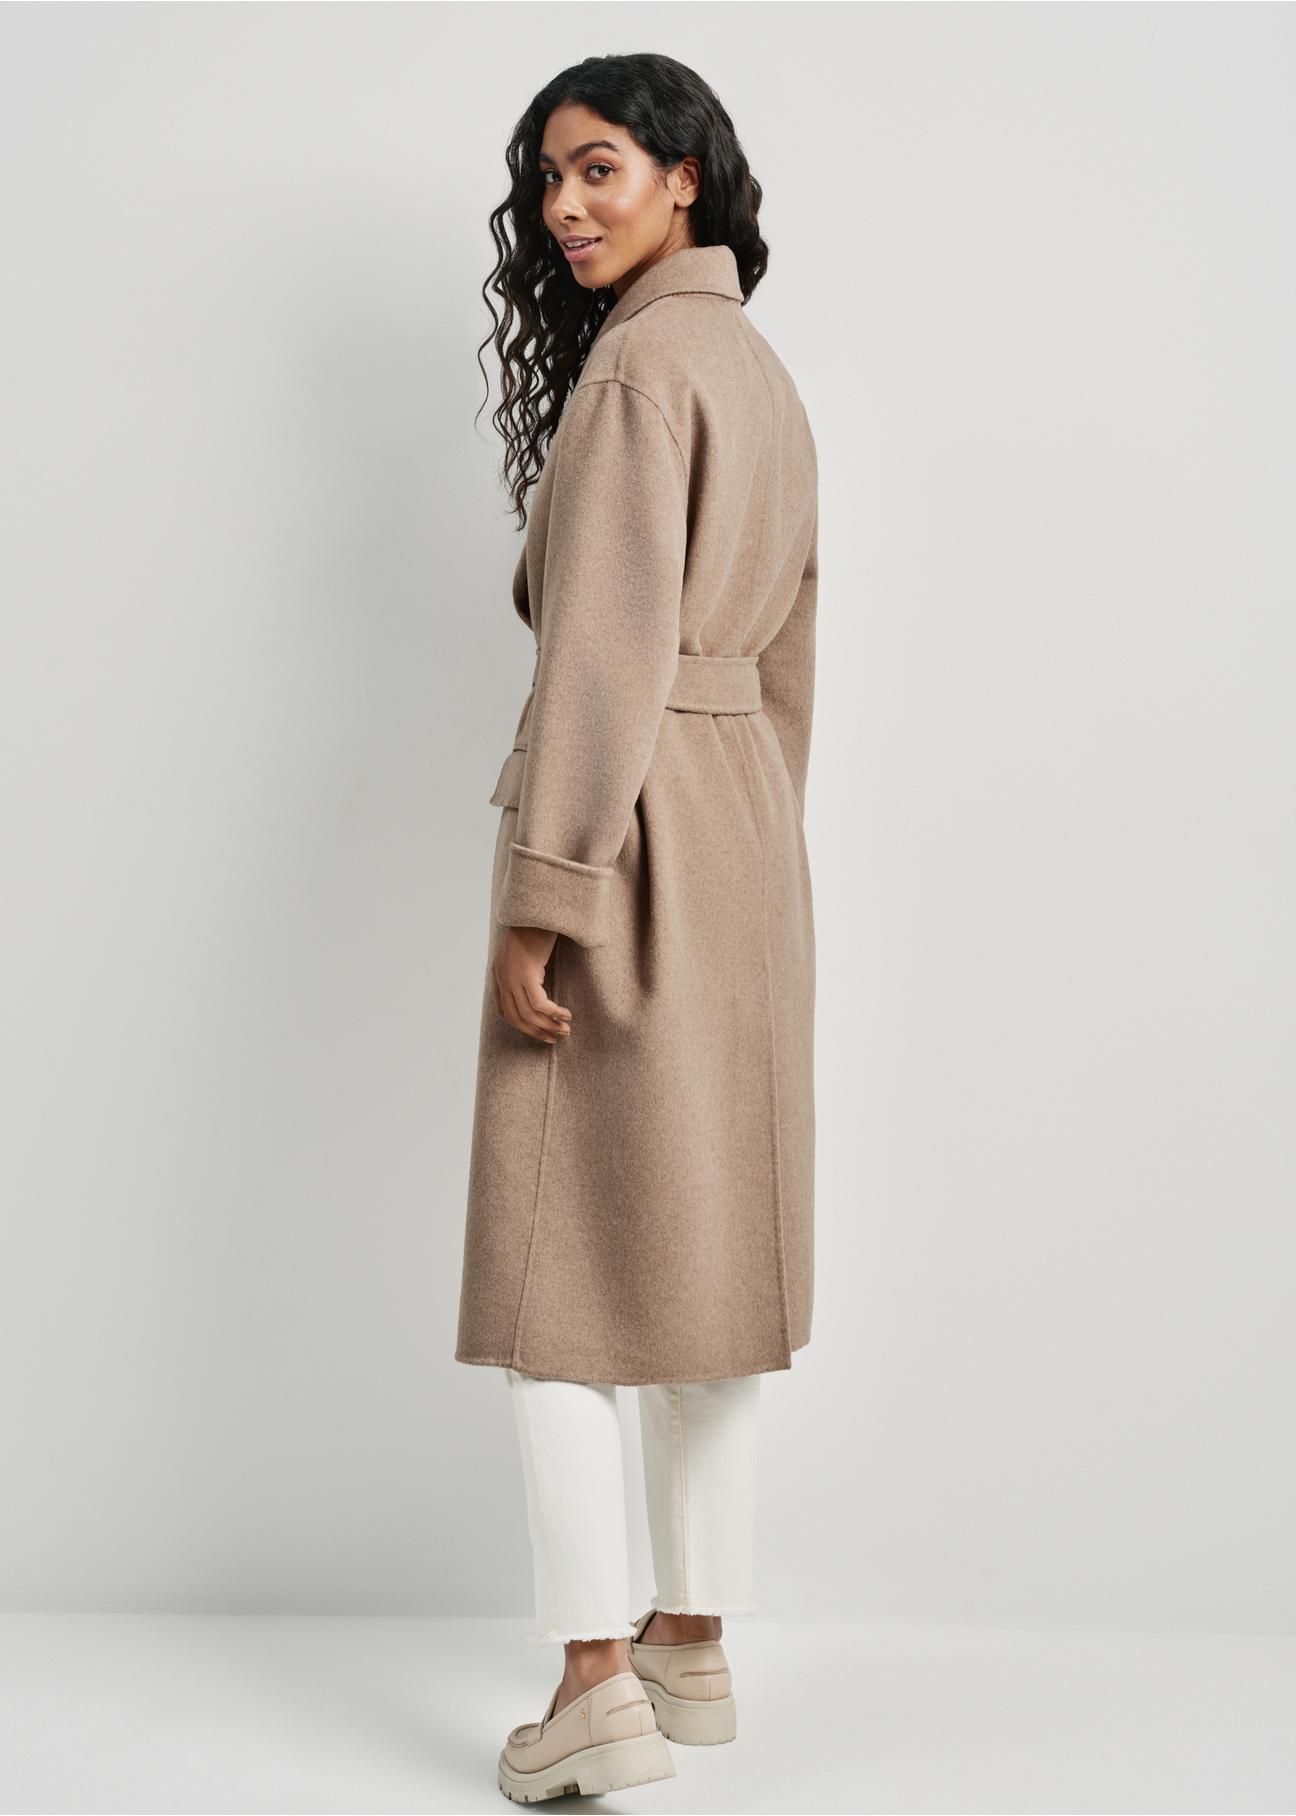 Długi beżowy płaszcz damski z wełny PLADT-0051-82(W24)